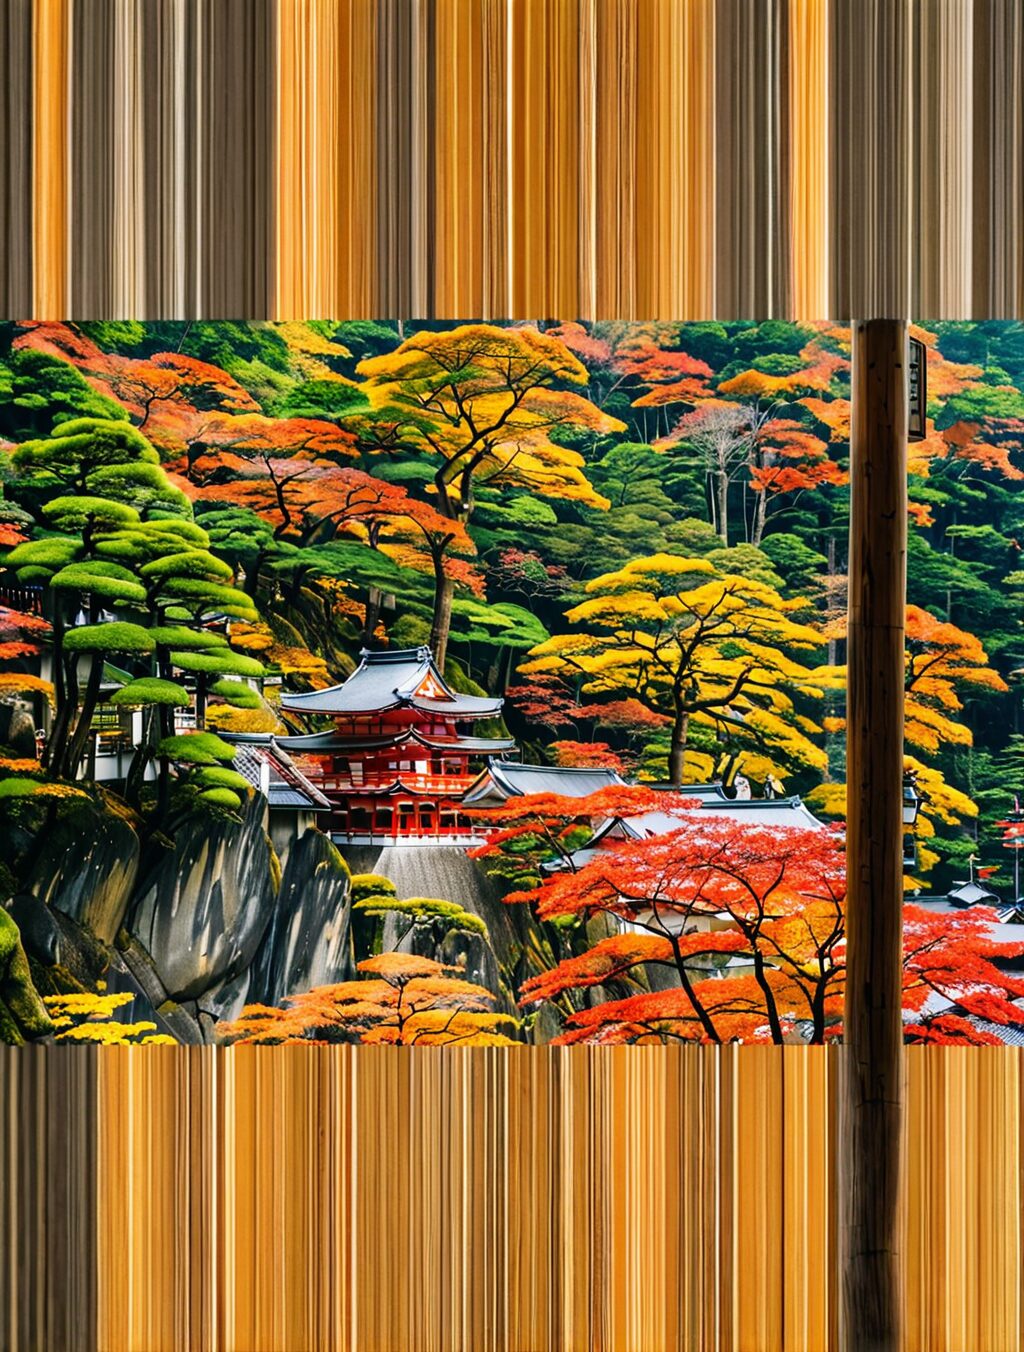 japan nikko day trip